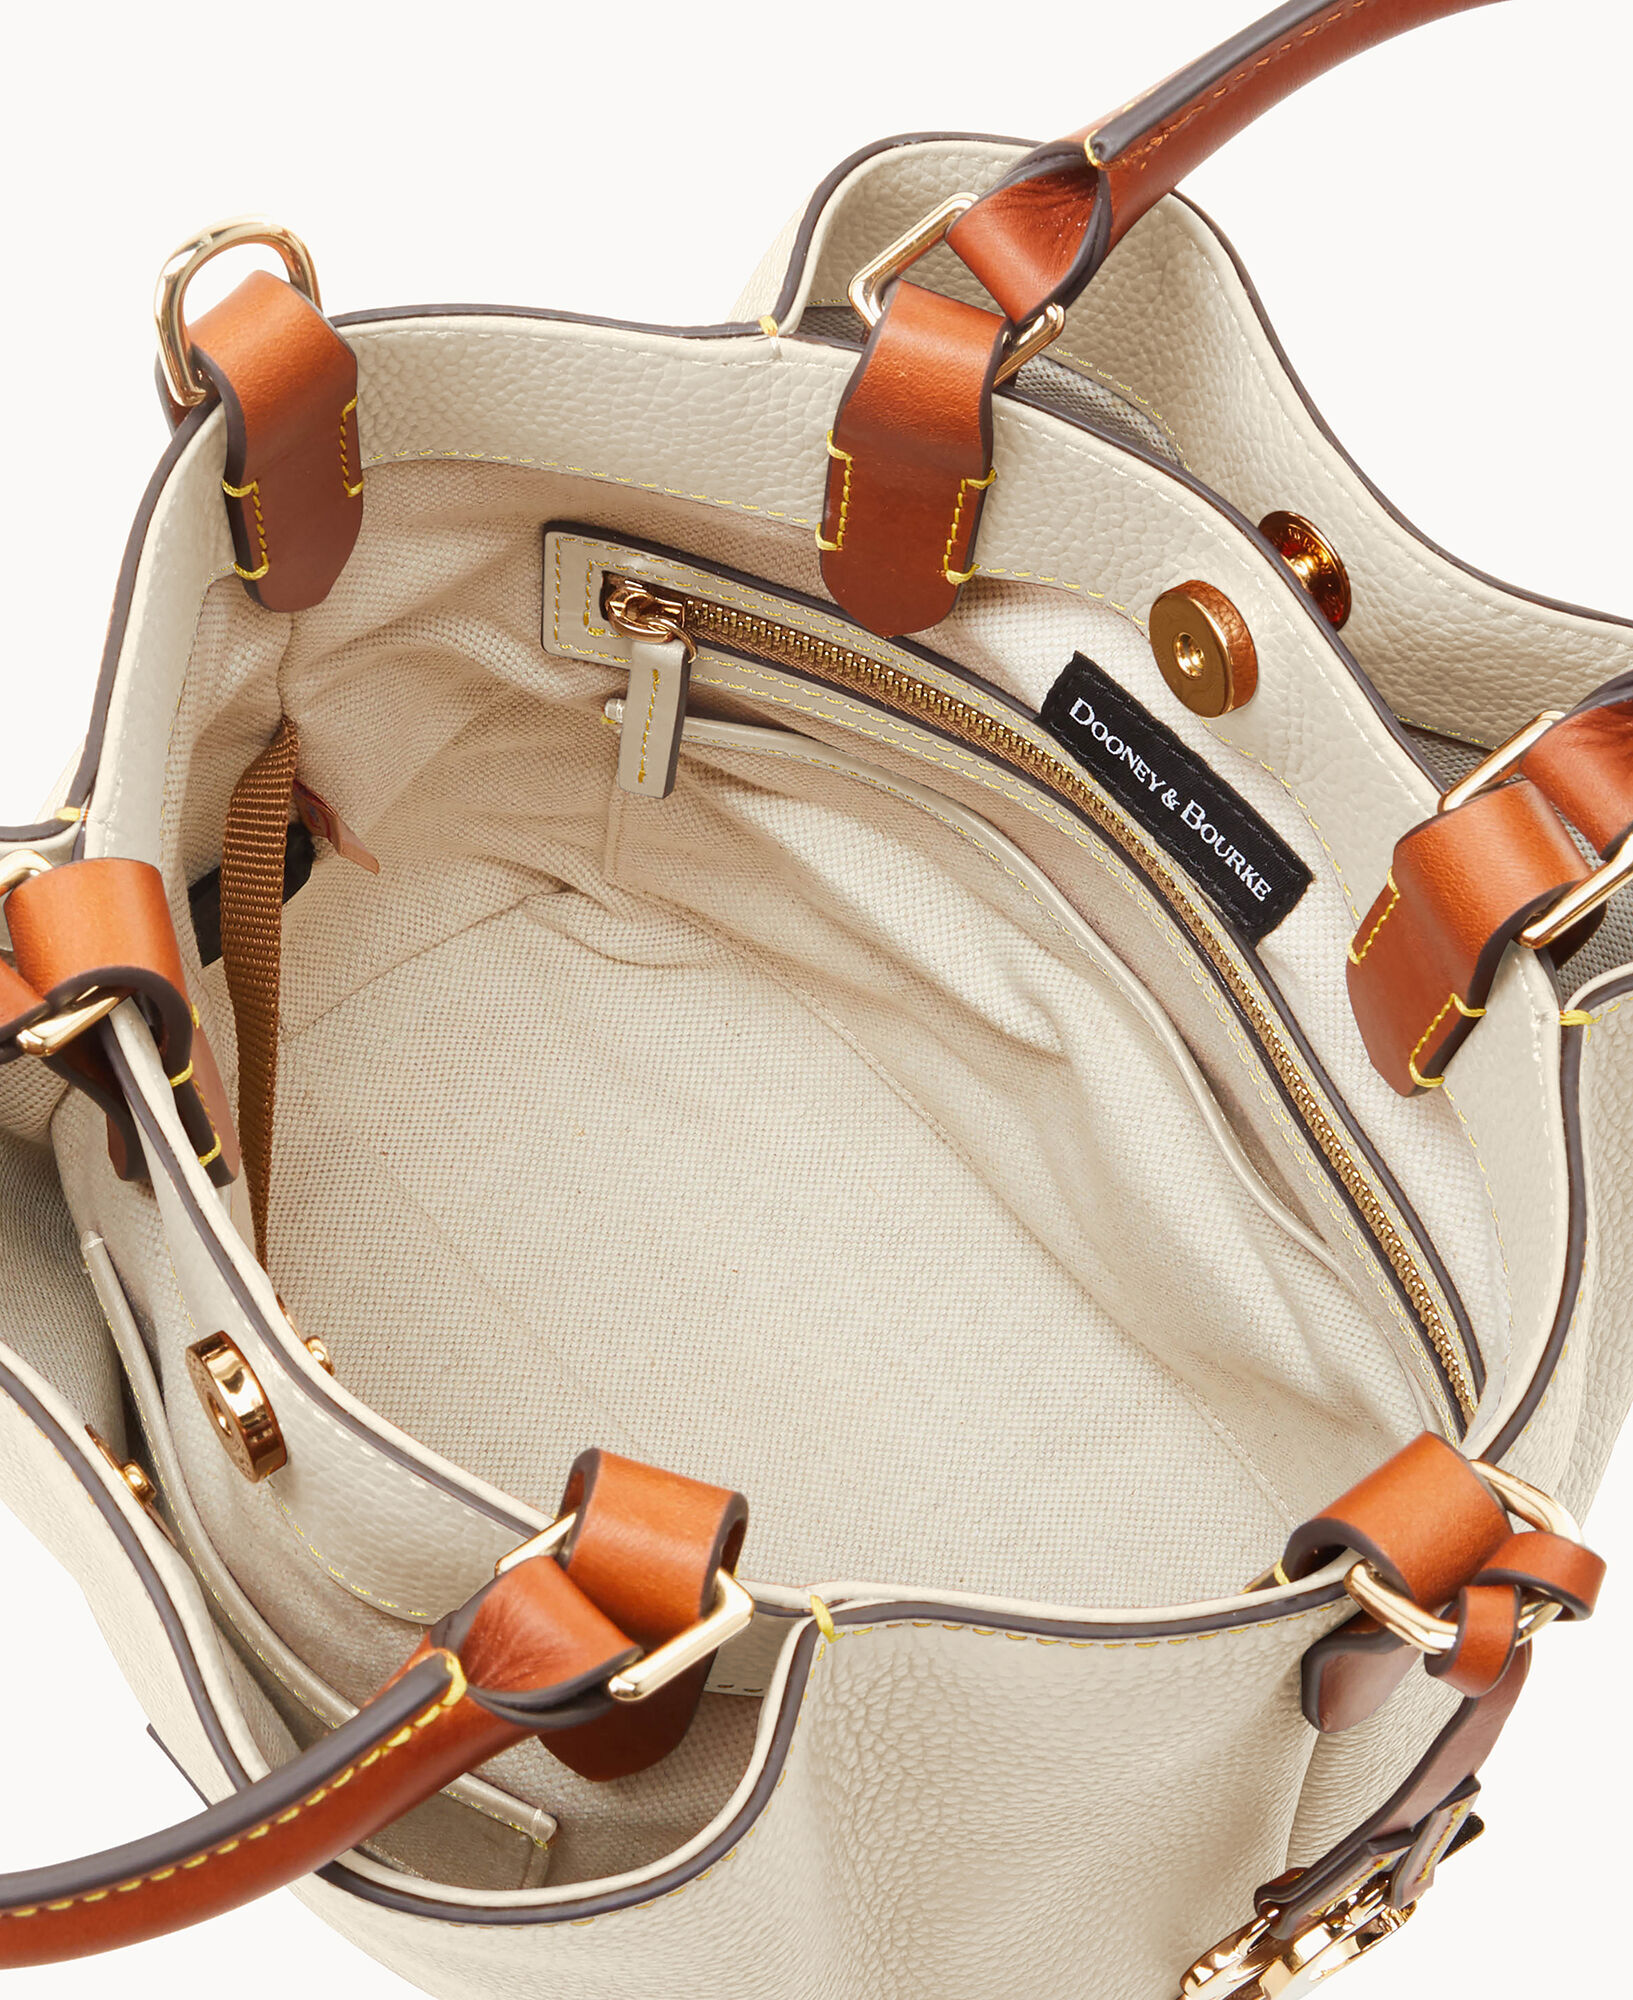 Dooney & Bourke Small Barlow Convertible Top-handle Bag in Gray